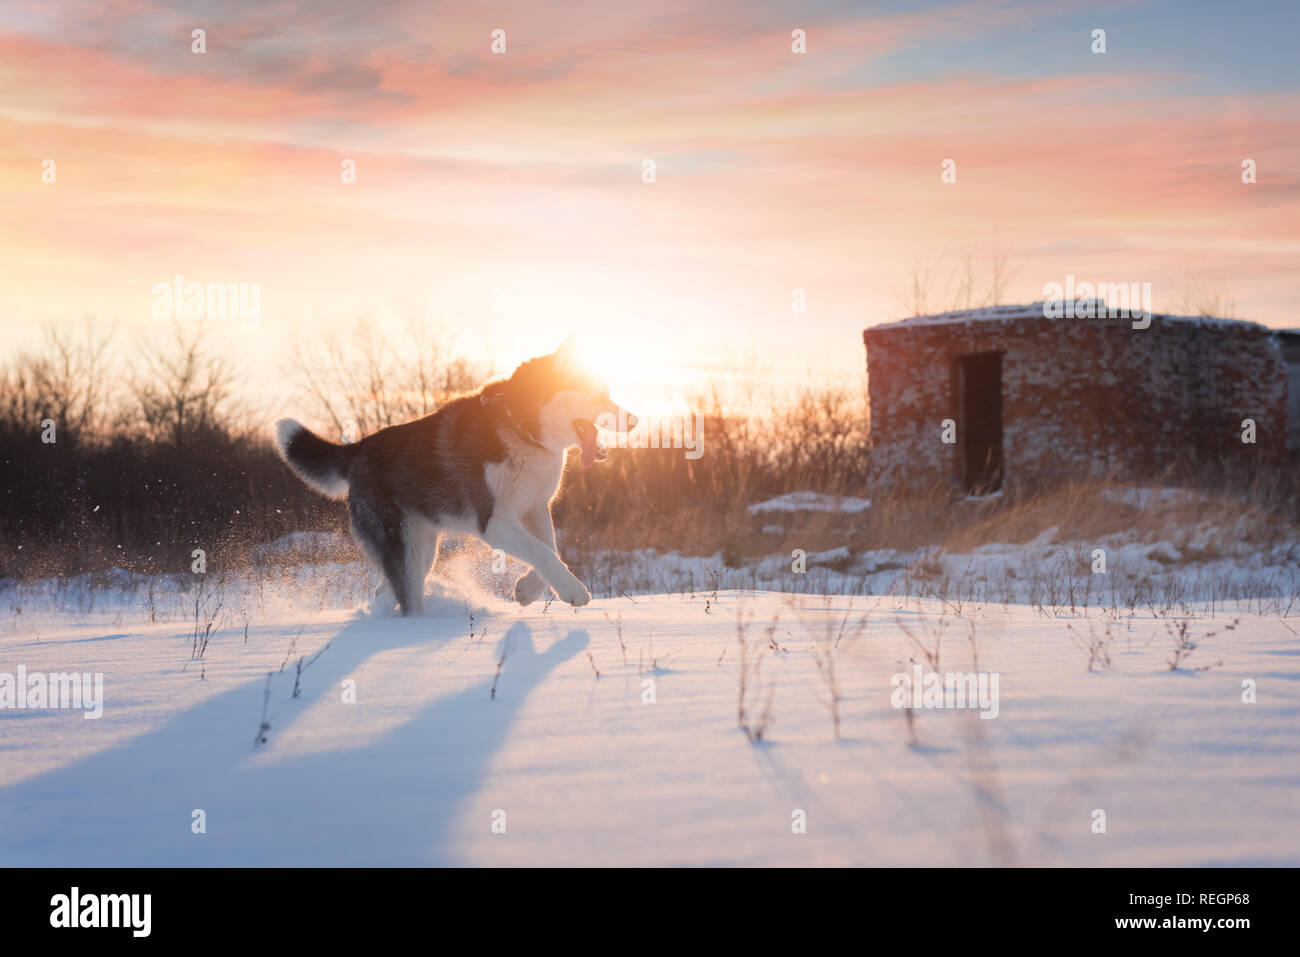 Siberian Husky cane a giocare sul campo d'inverno. Happy puppy in soffice neve. Fotografia degli animali Foto Stock